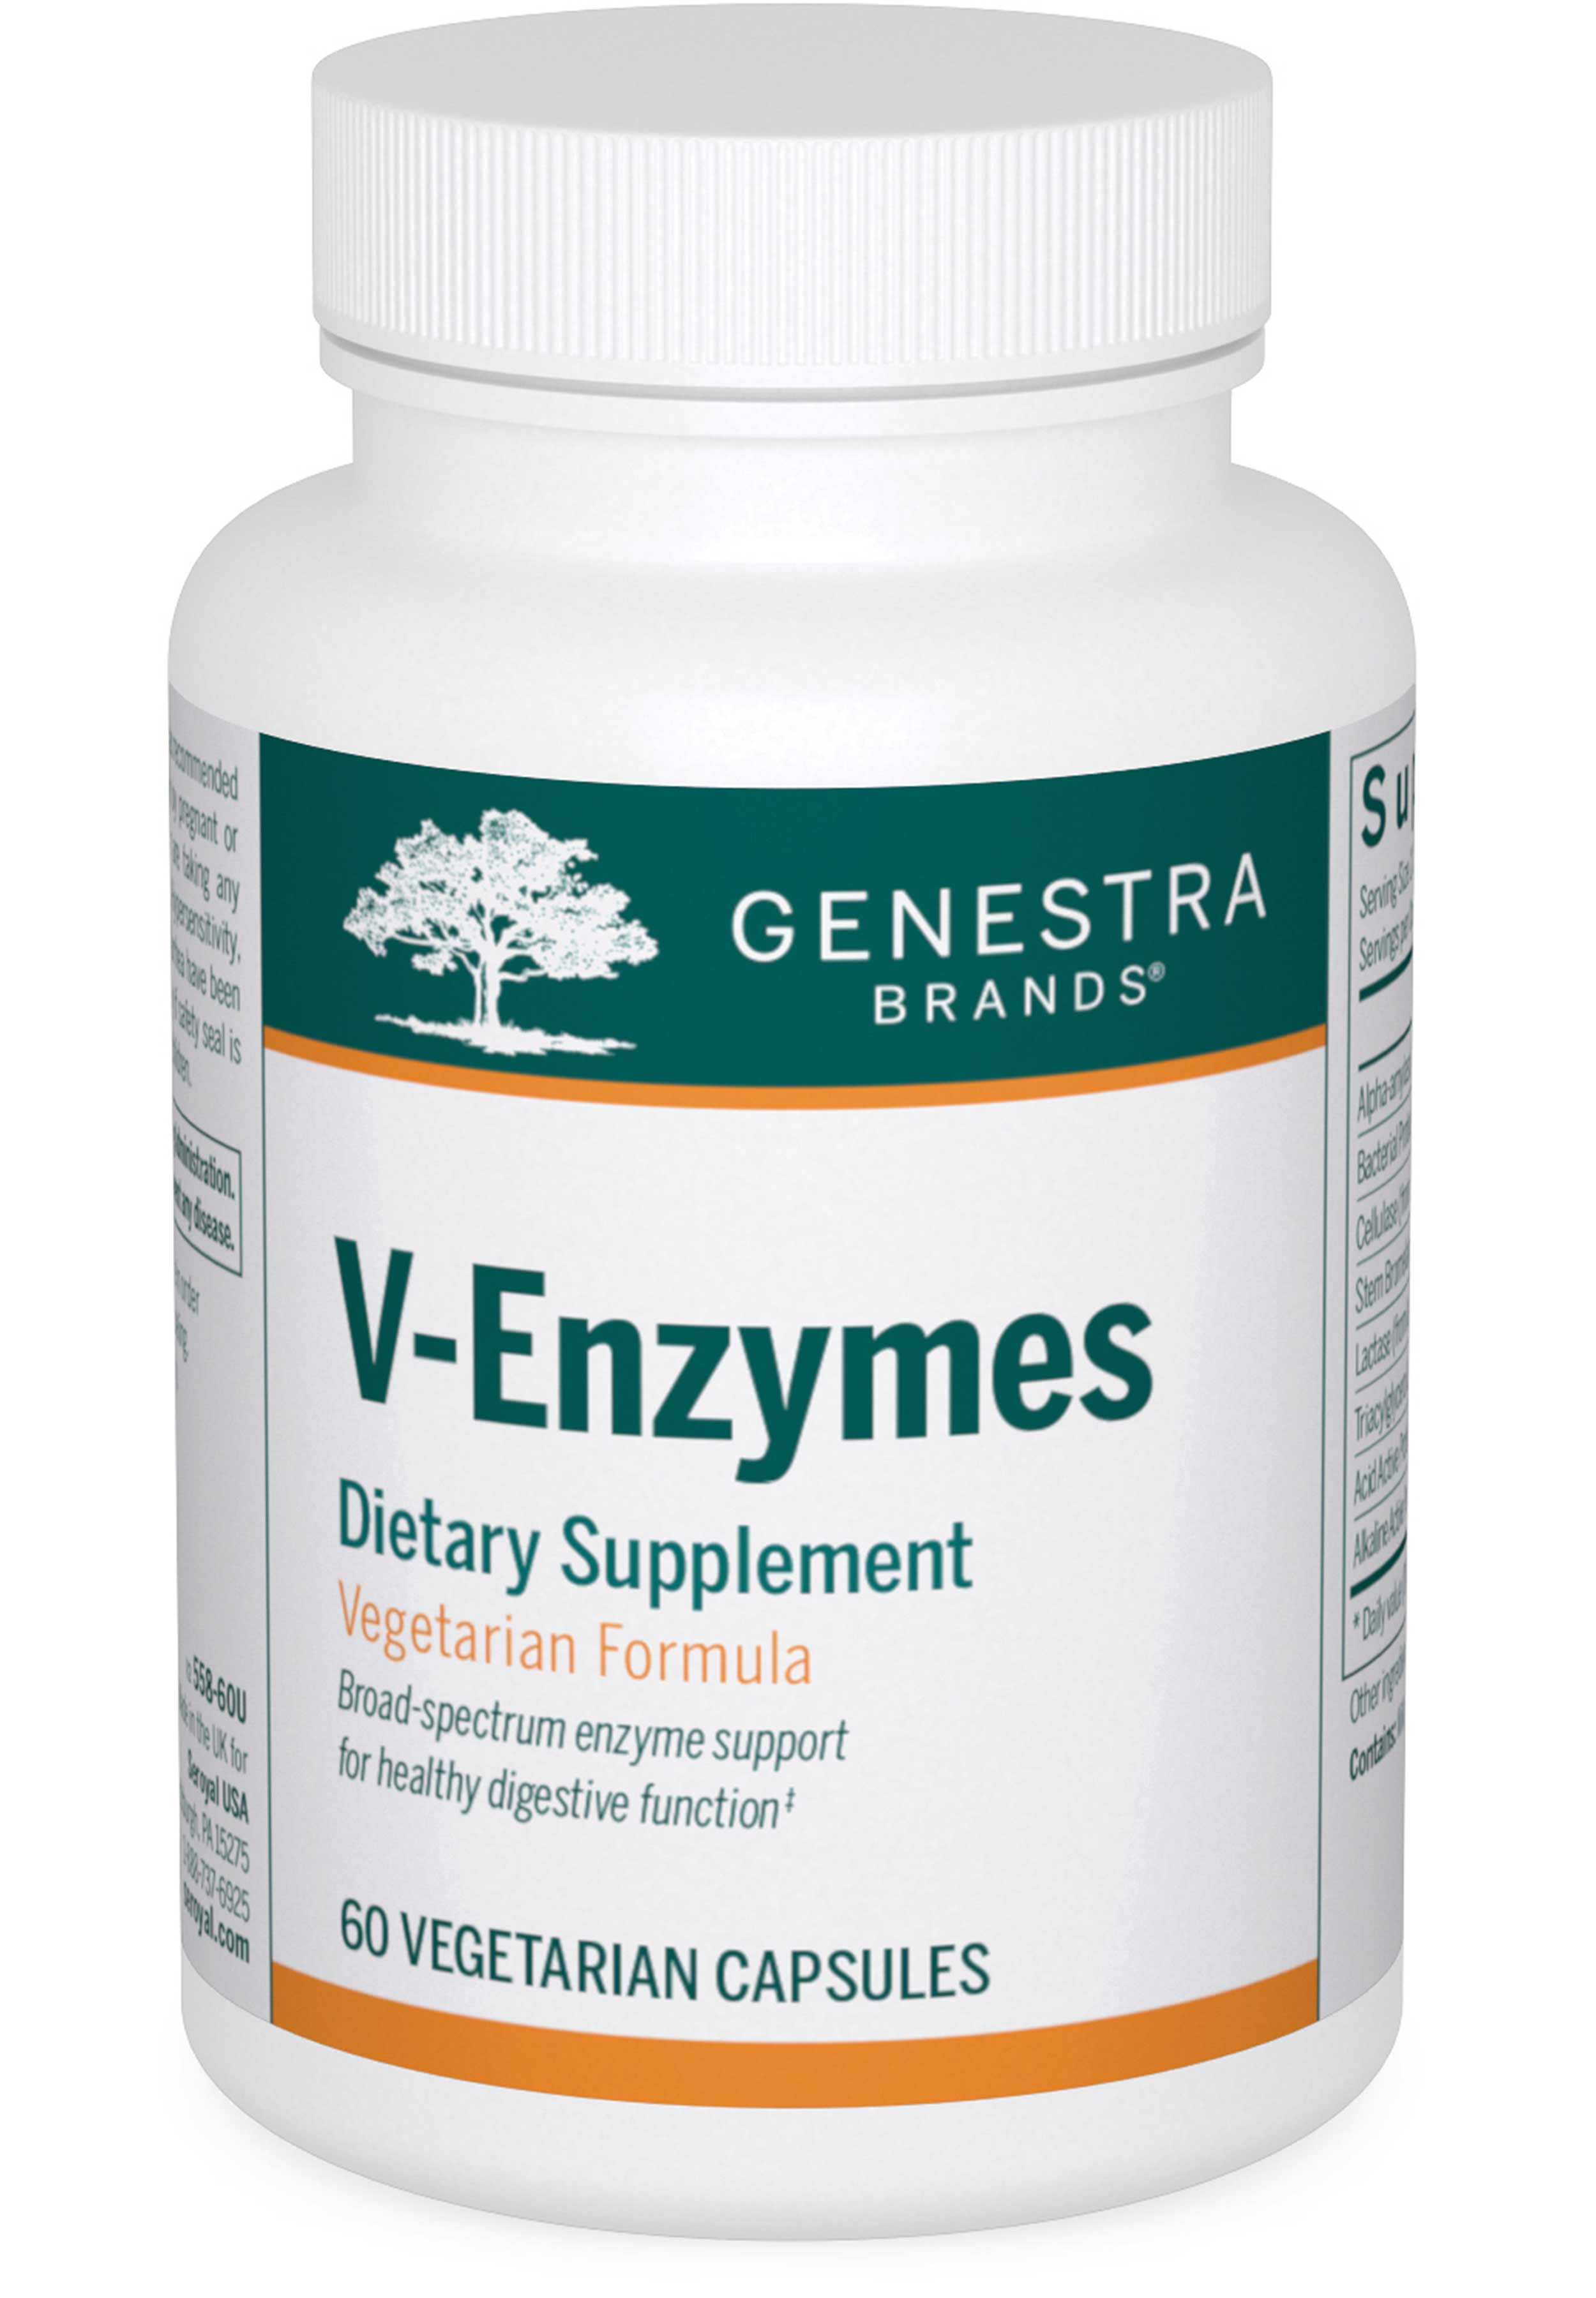 Genestra Brands V-Enzymes